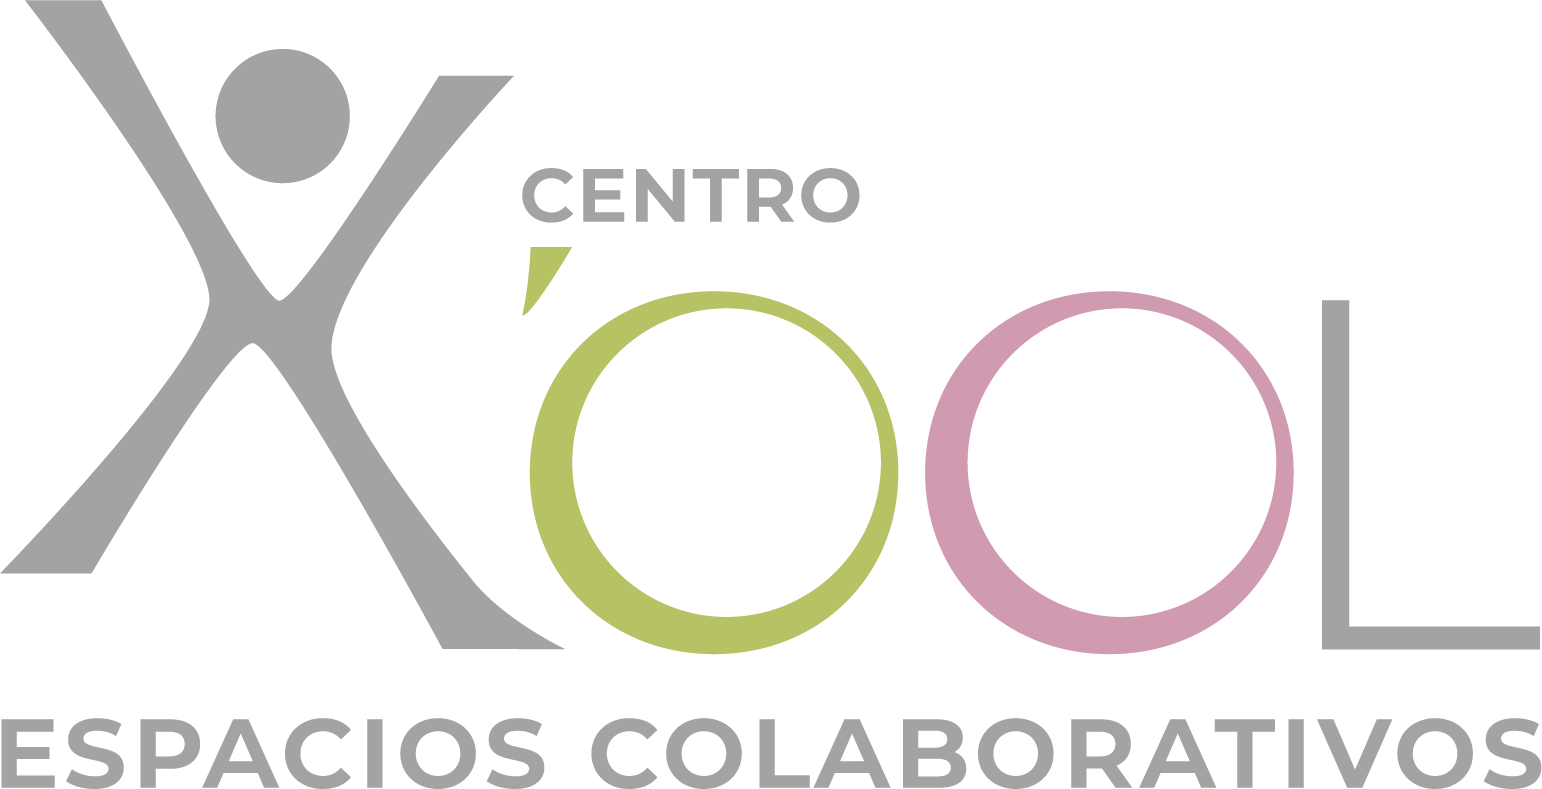 Centro Xool